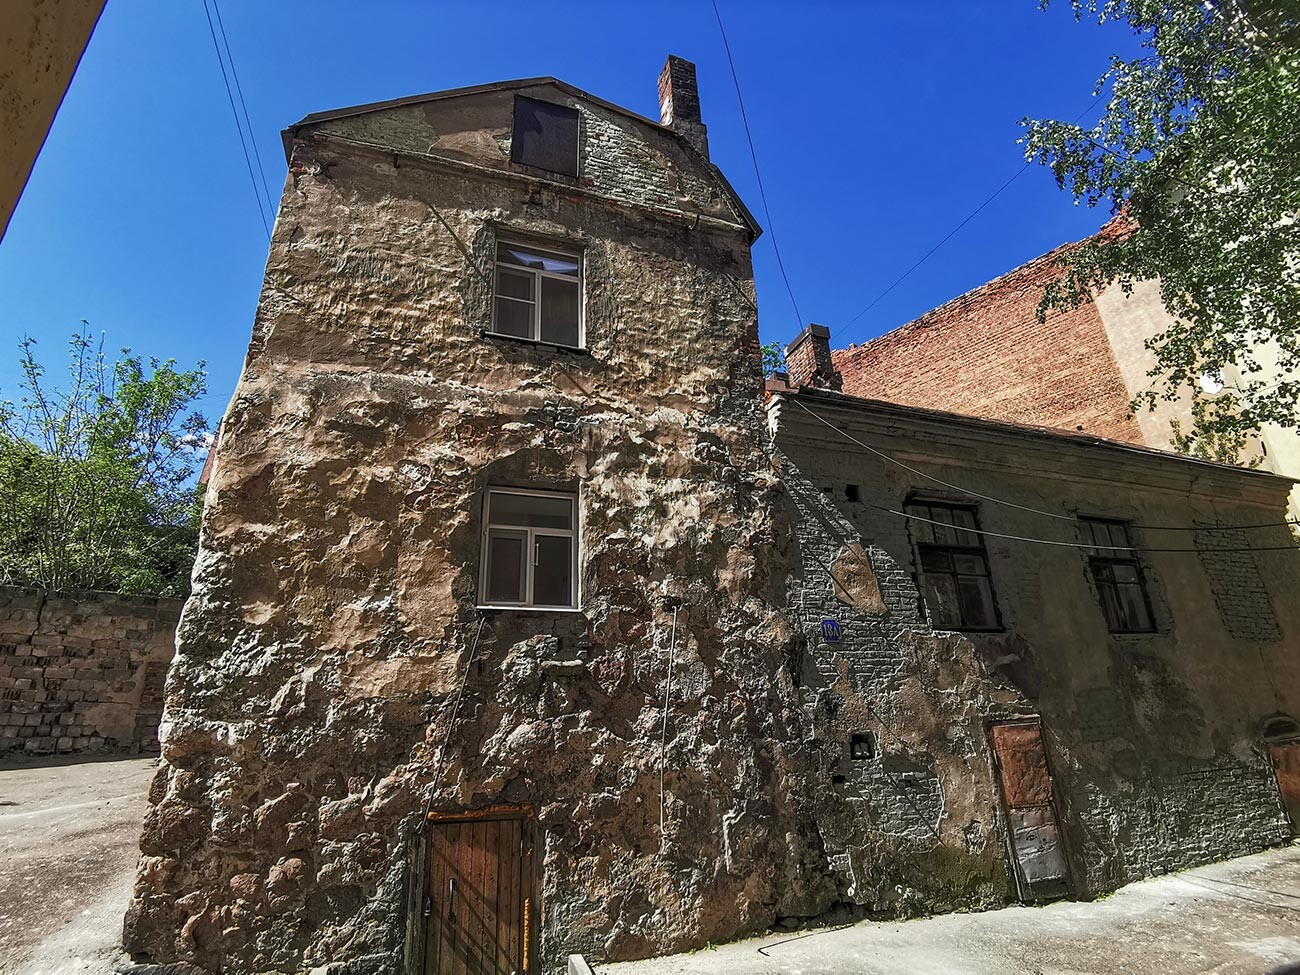 Најстарија стамбена зграда у Виборгу зидана од гранитних крупних облутака, 16. век.